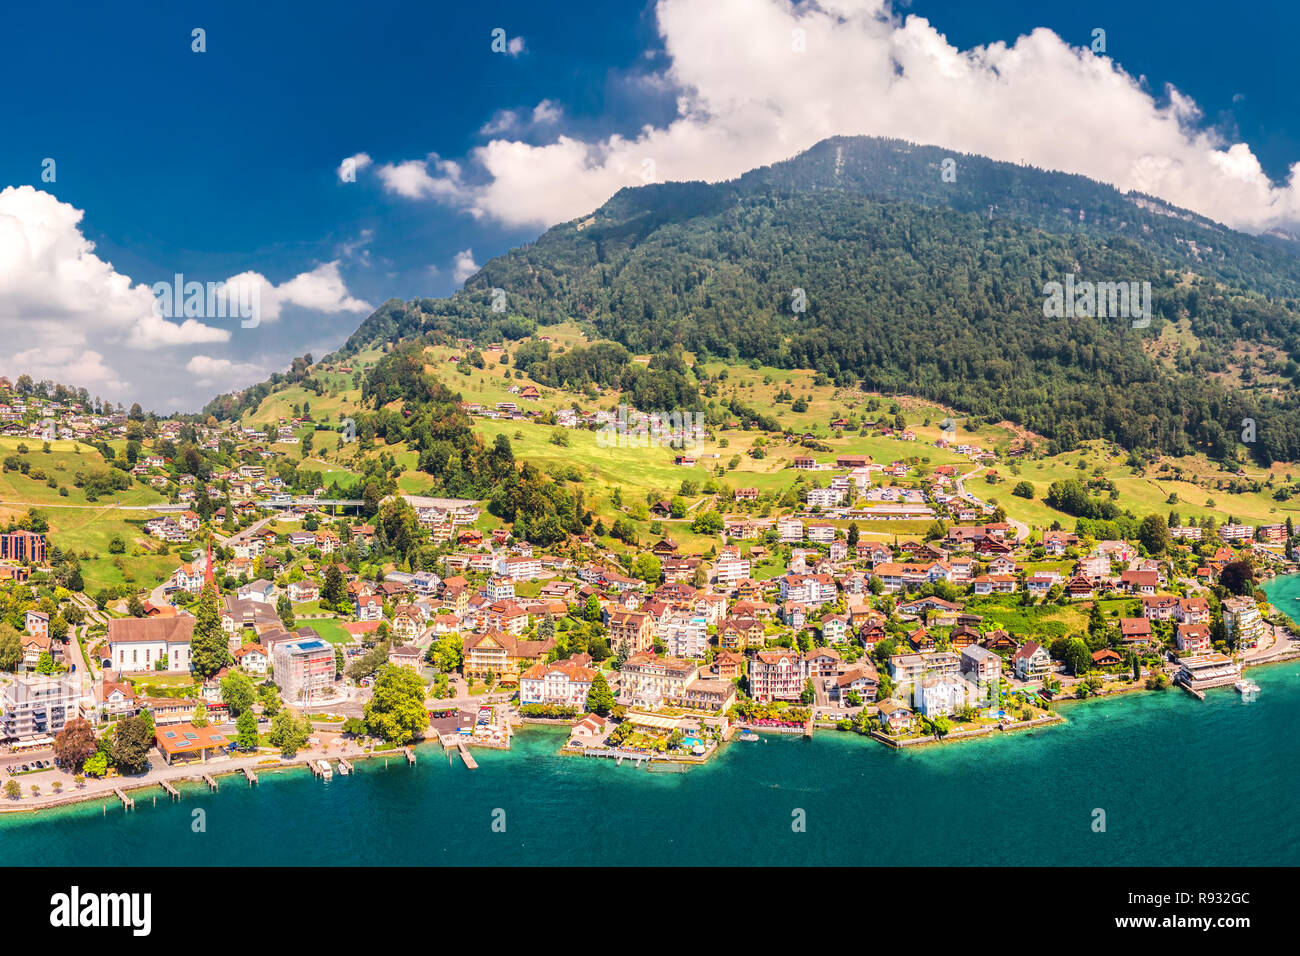 Dorf Weggis am Vierwaldstättersee (Vierwaldstatersee), Rigi und Schweizer Alpen im Hintergrund in der Nähe der berühmten Stadt Luzern, Schweiz. Stockfoto